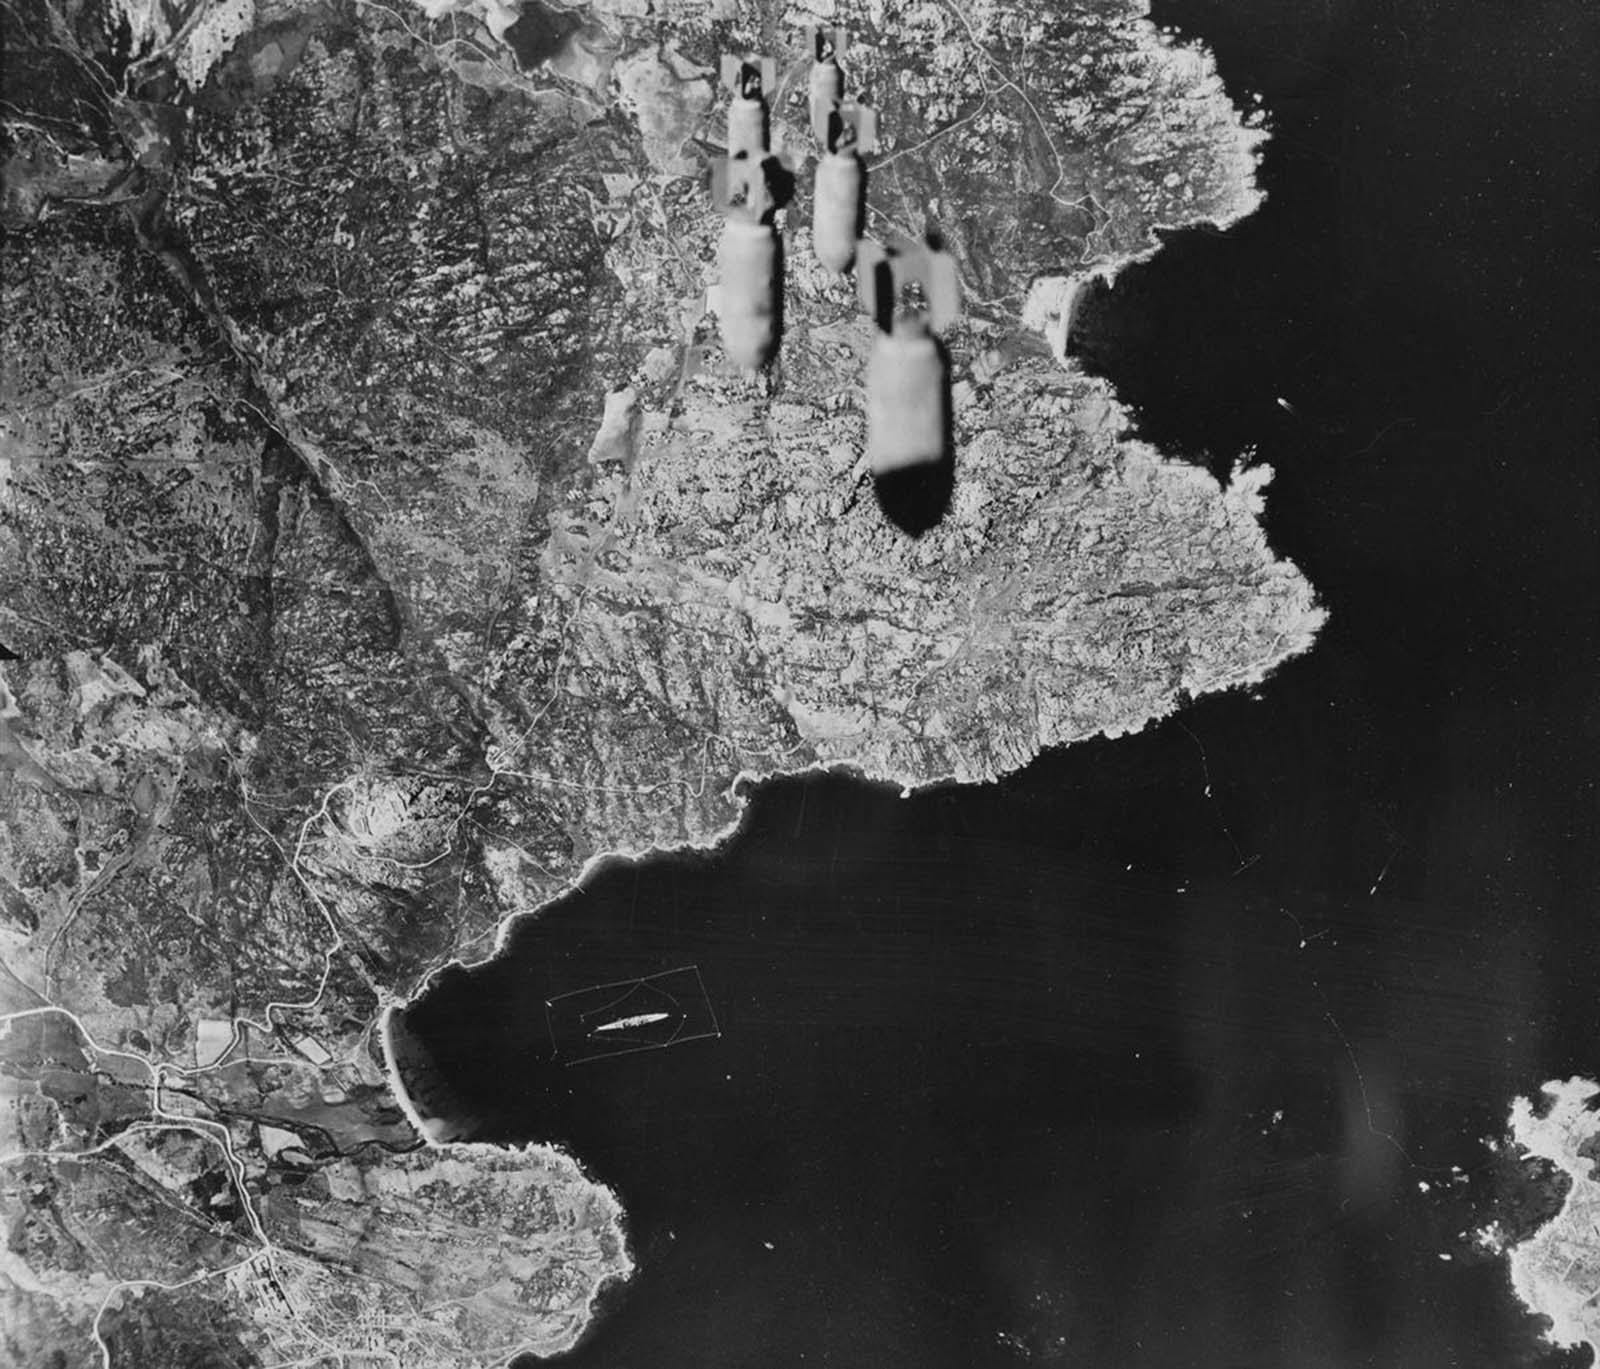 Um trem de bombas cai do avião das forças aéreas do exército dos Estados Unidos em território nas Aleutas mantidas pelos japoneses em 1943.